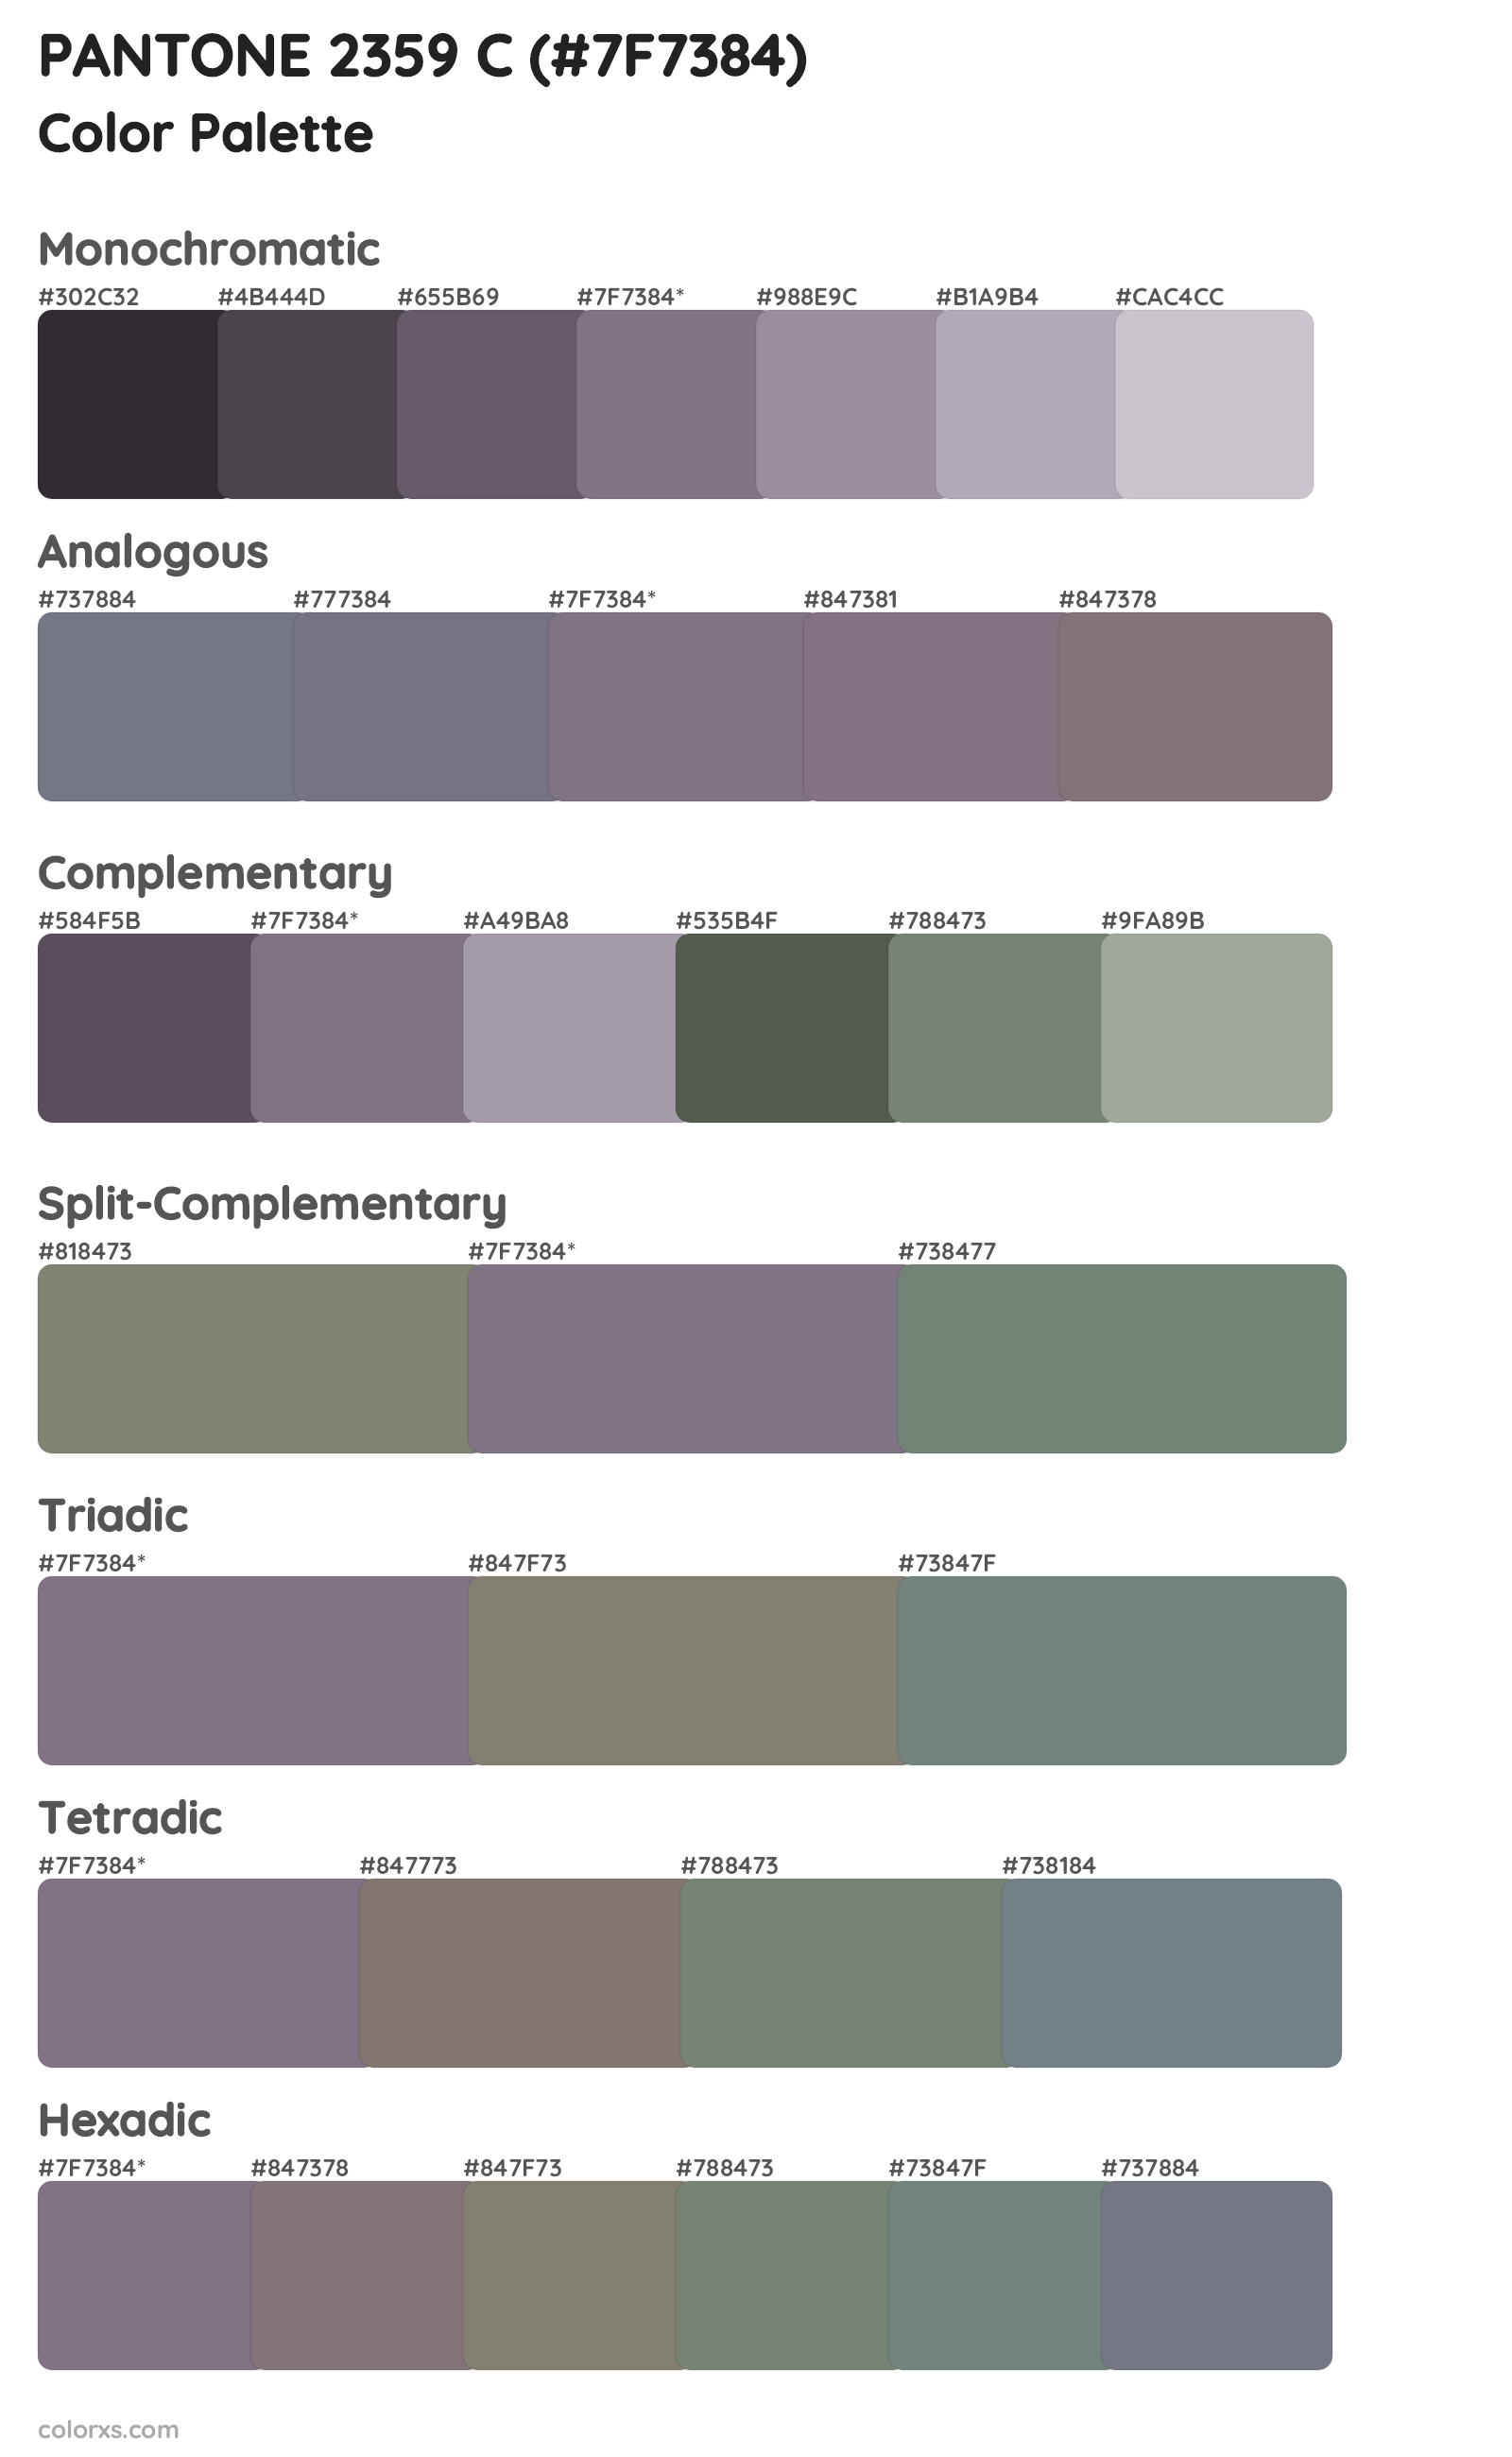 PANTONE 2359 C Color Scheme Palettes